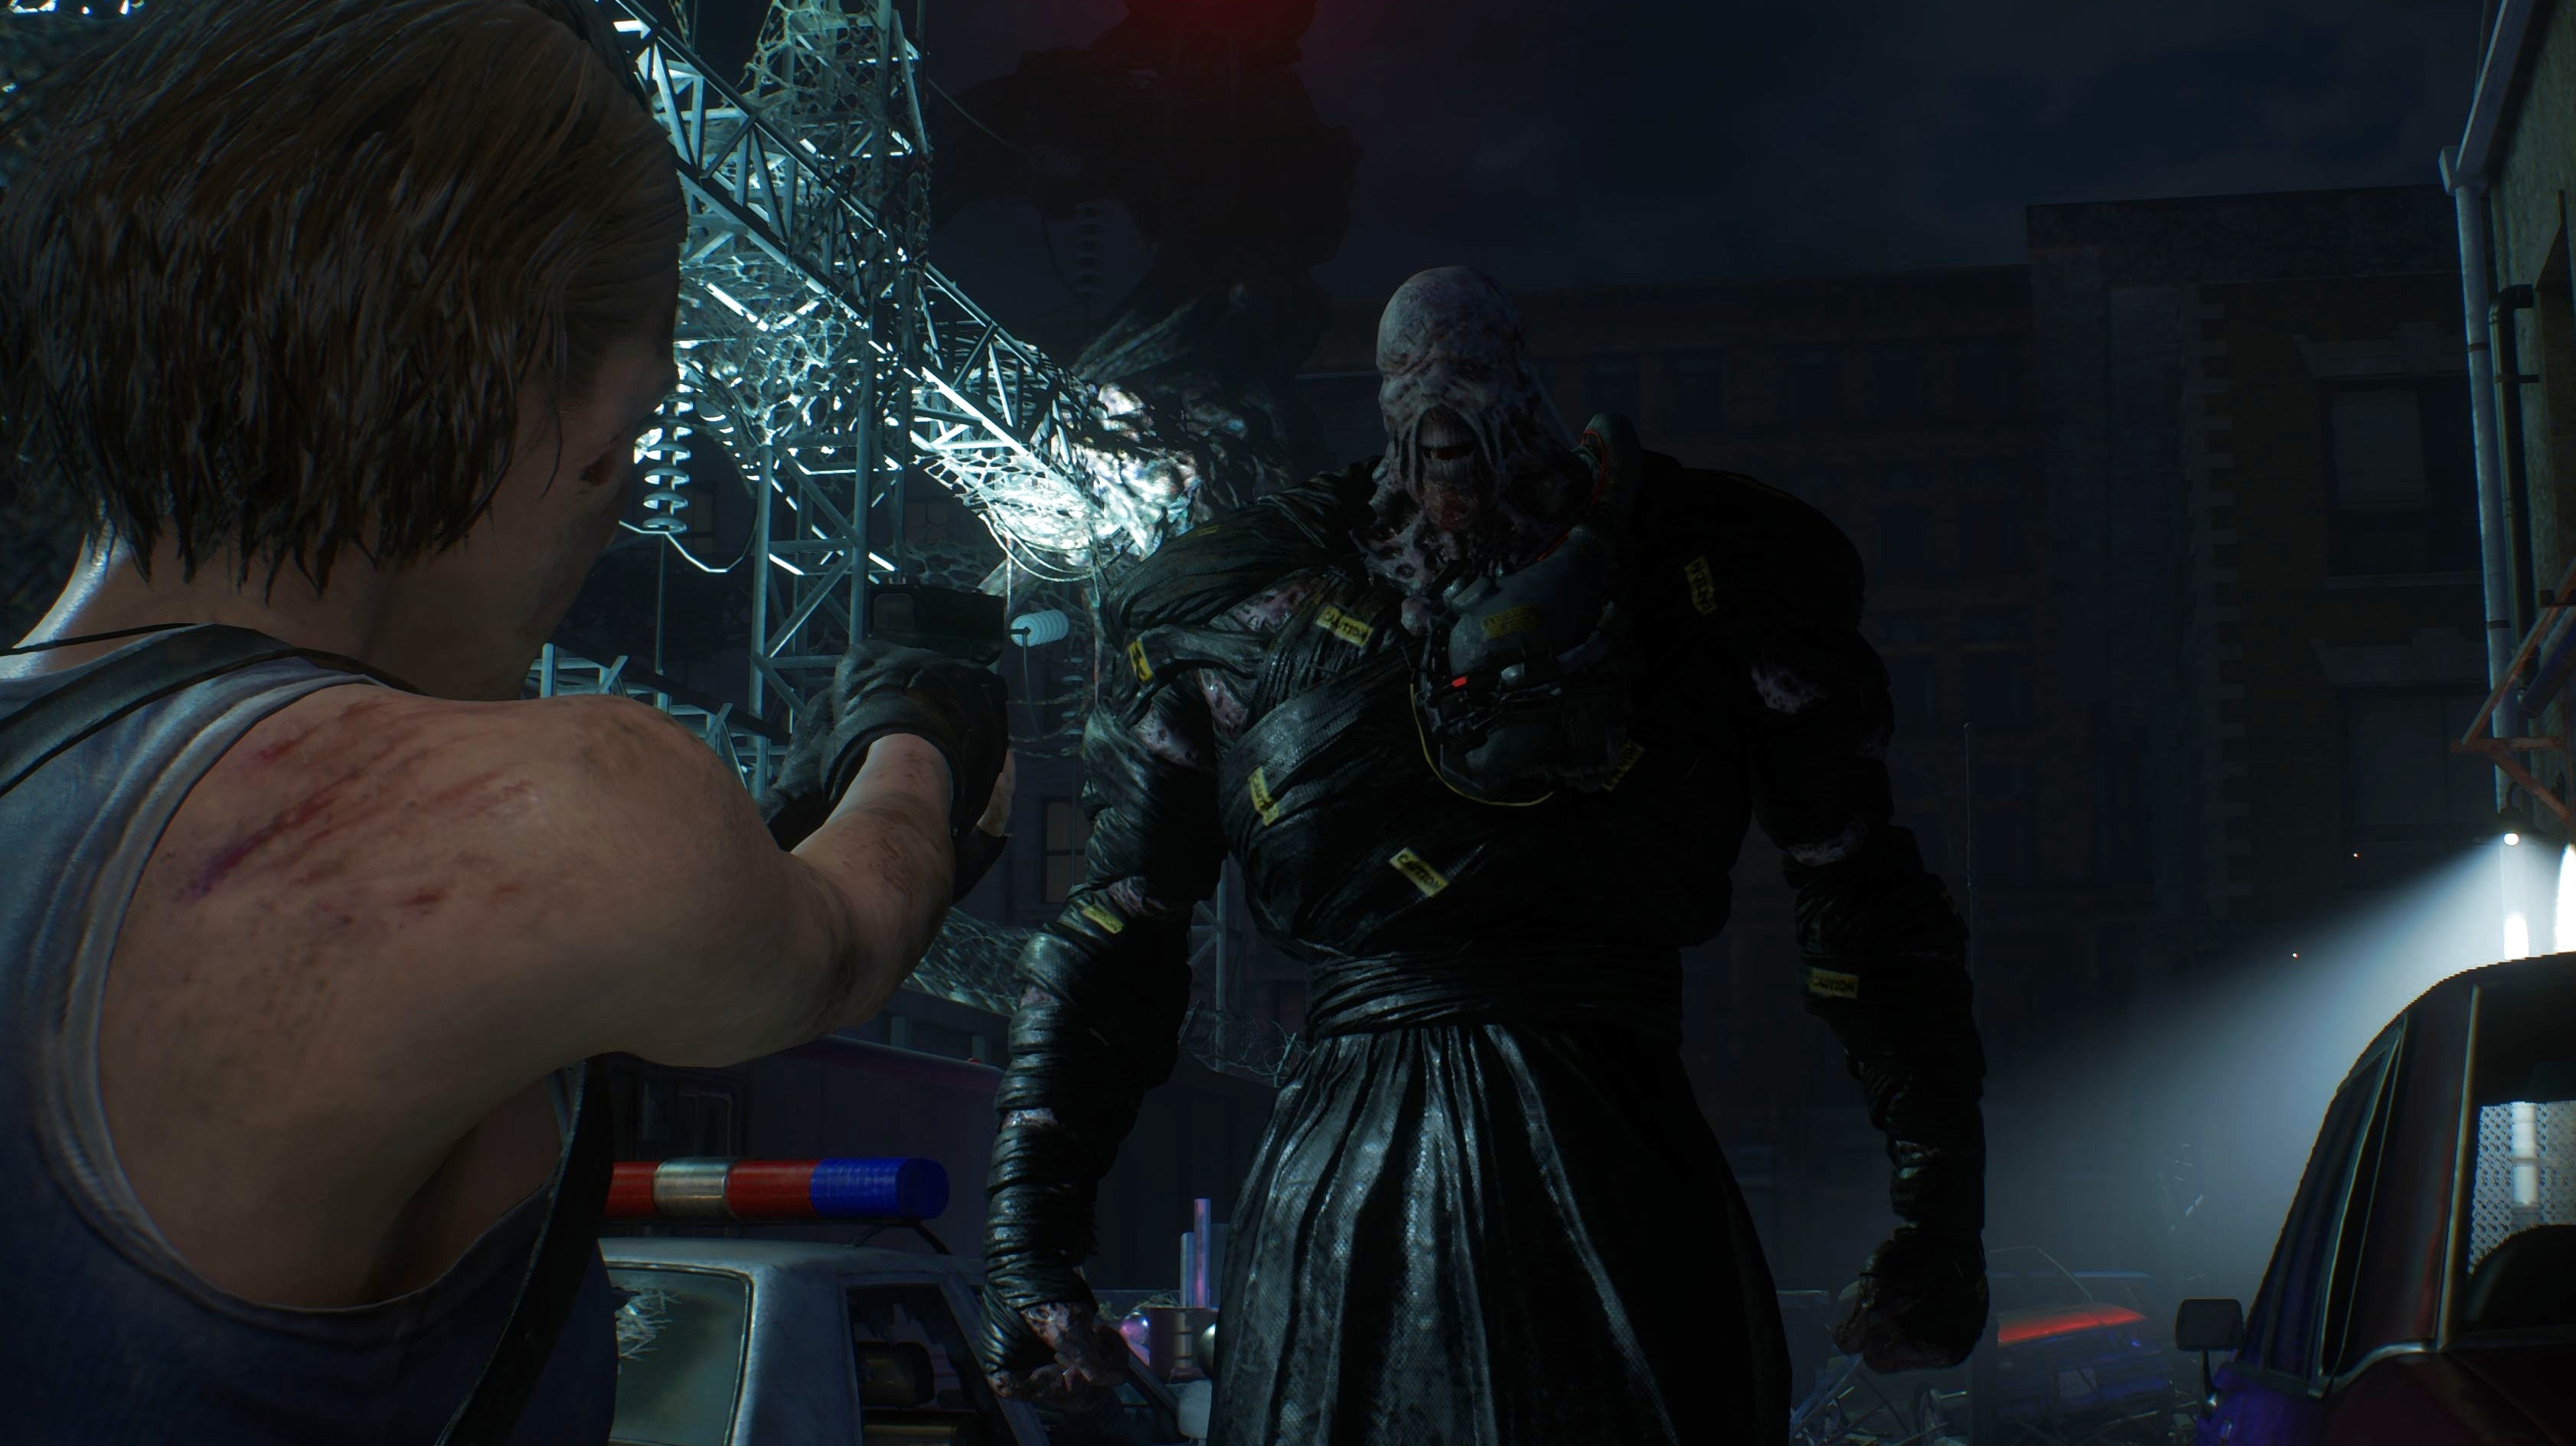 Bilder zu Resident Evil 3 Remake: Mehr Action, neue Moves und gemeinere Feinde.